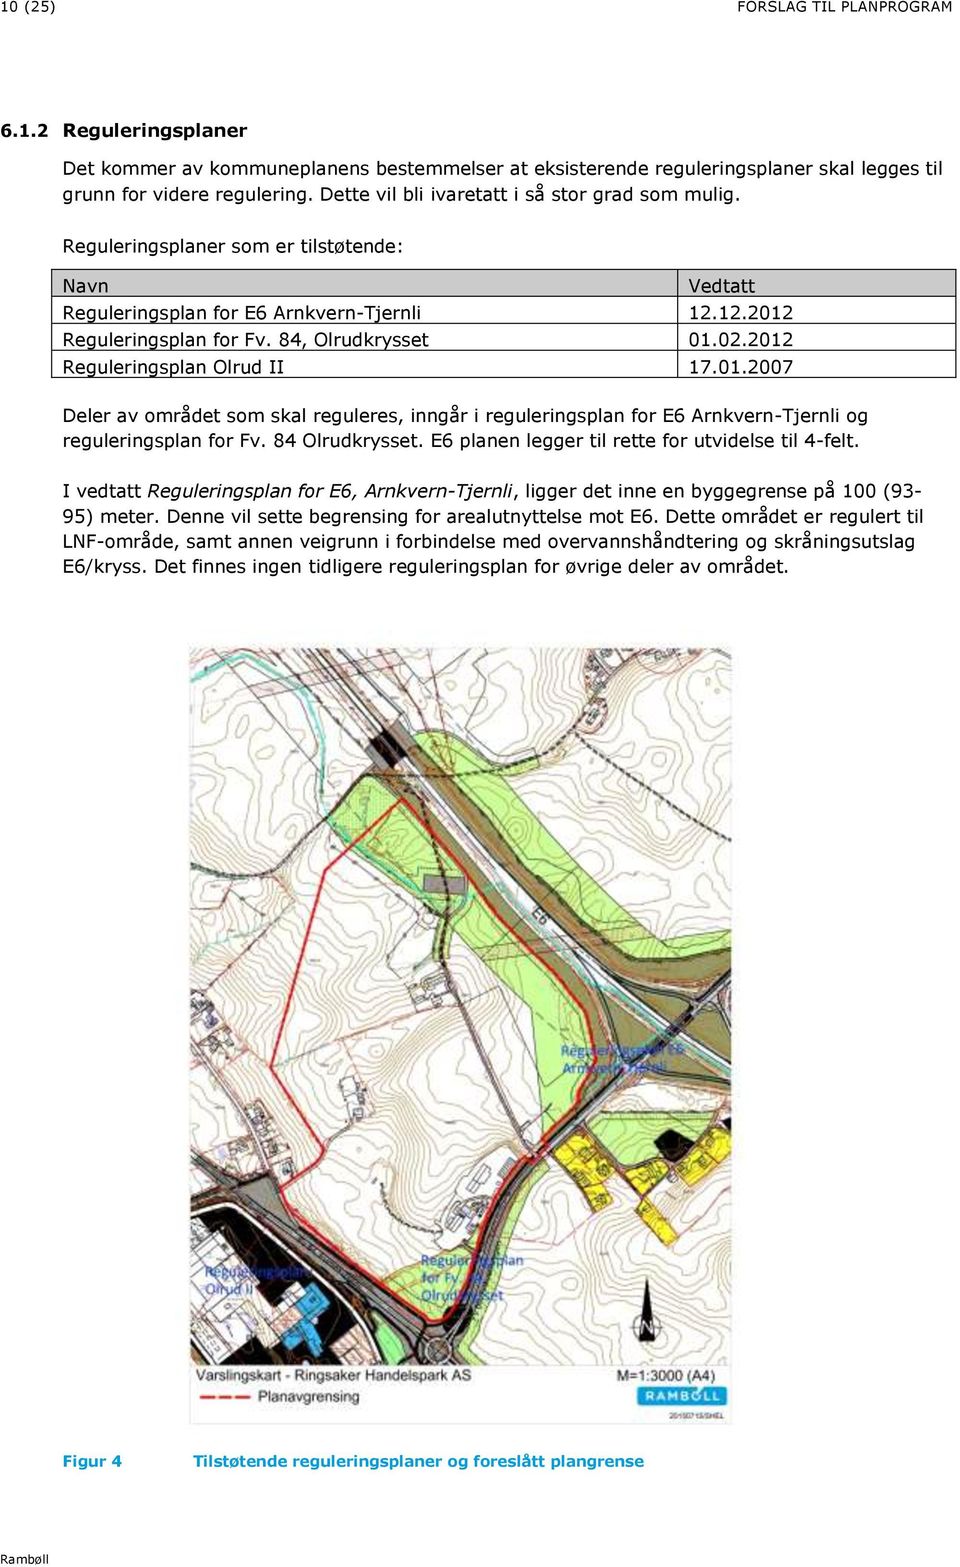 2012 Reguleringsplan Olrud II 17.01.2007 Deler av området som skal reguleres, inngår i reguleringsplan for E6 Arnkvern-Tjernli og reguleringsplan for Fv. 84 Olrudkrysset.